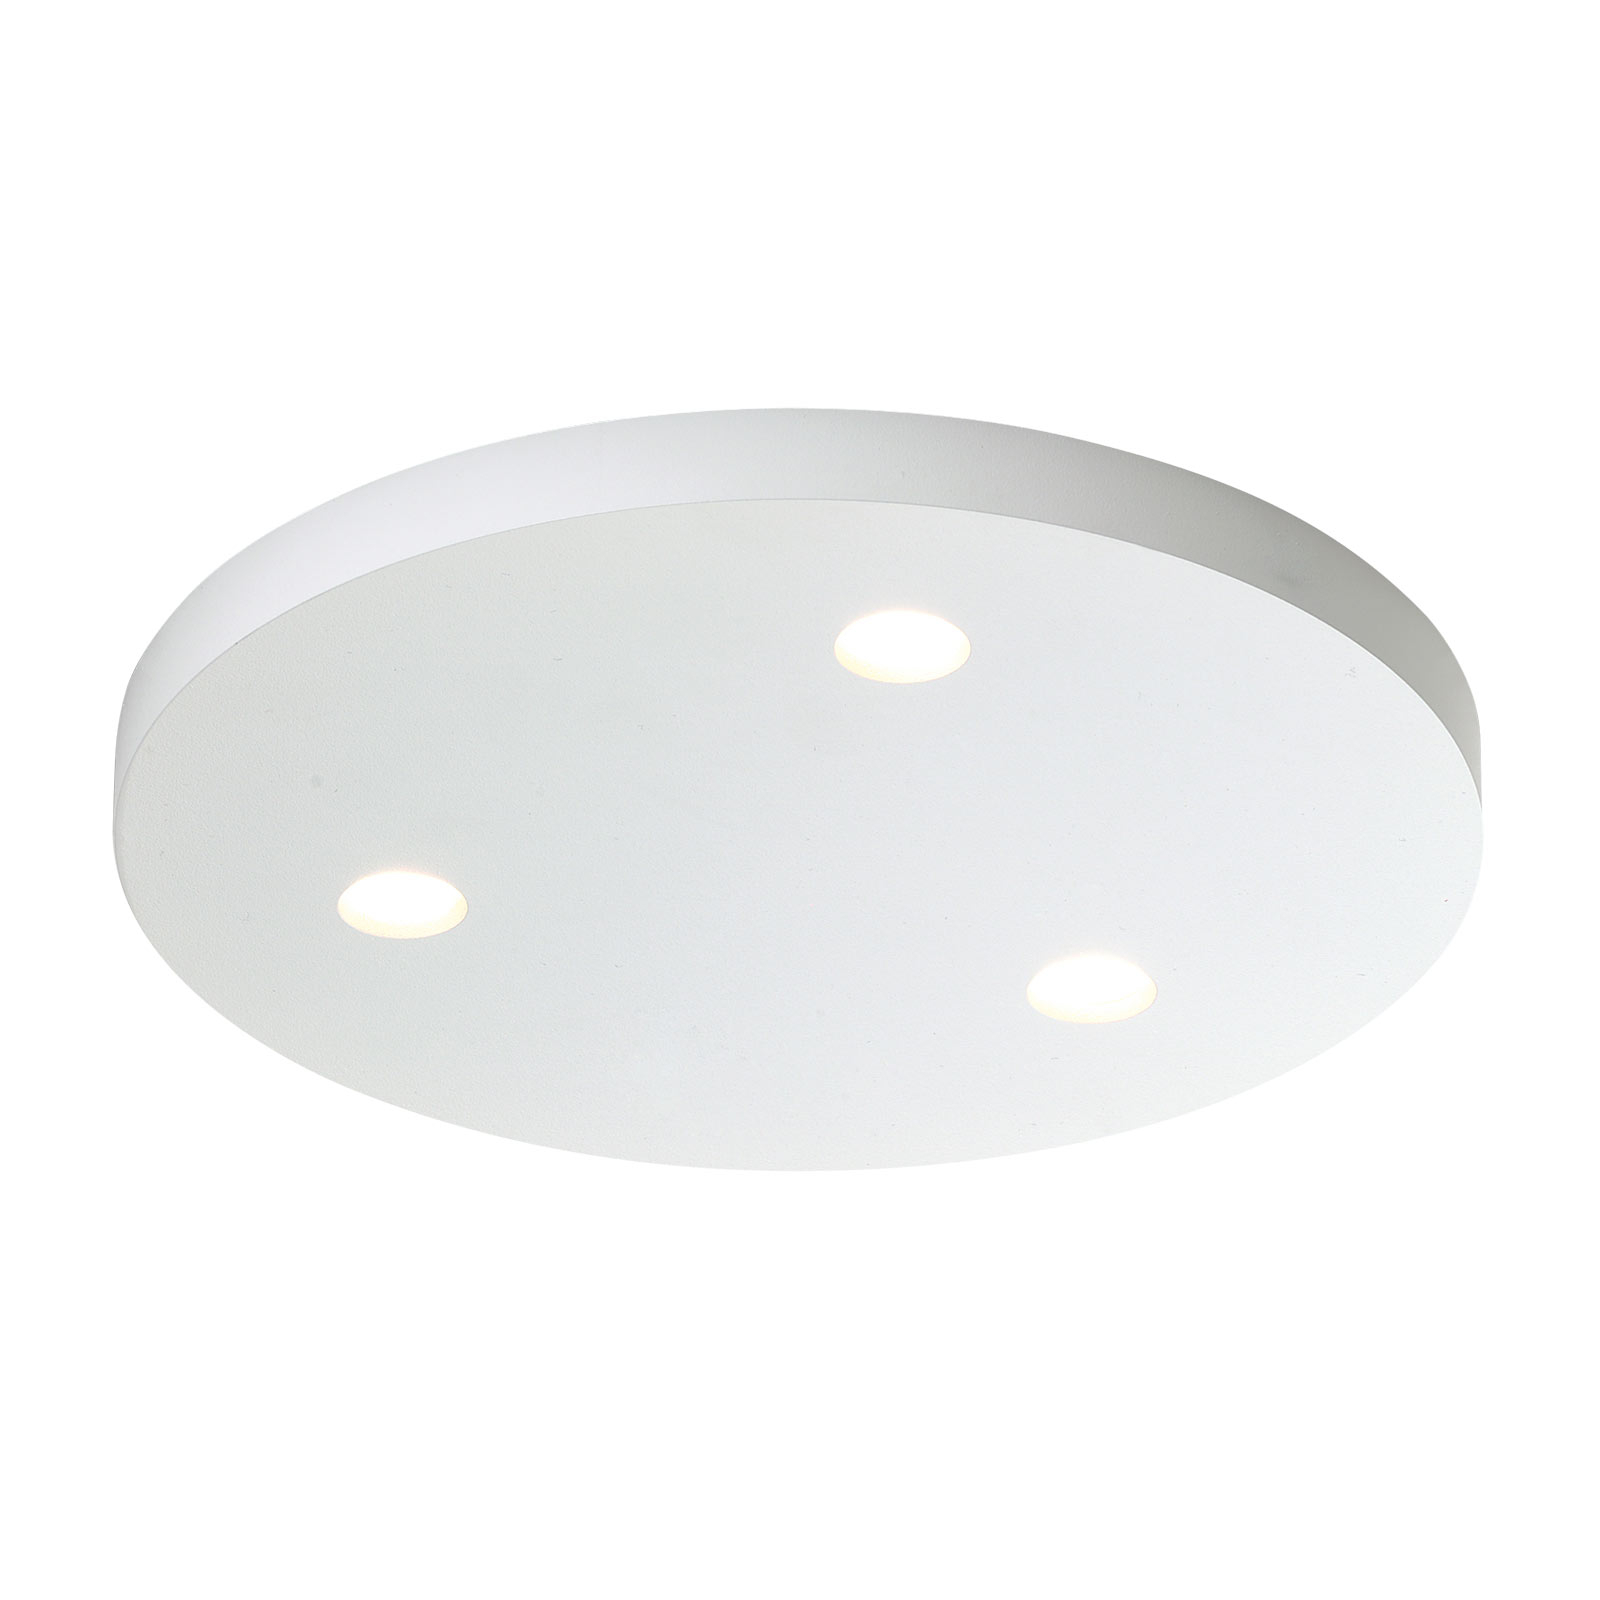 Bopp Close plafonnier LED à 3 lampes rond blanc